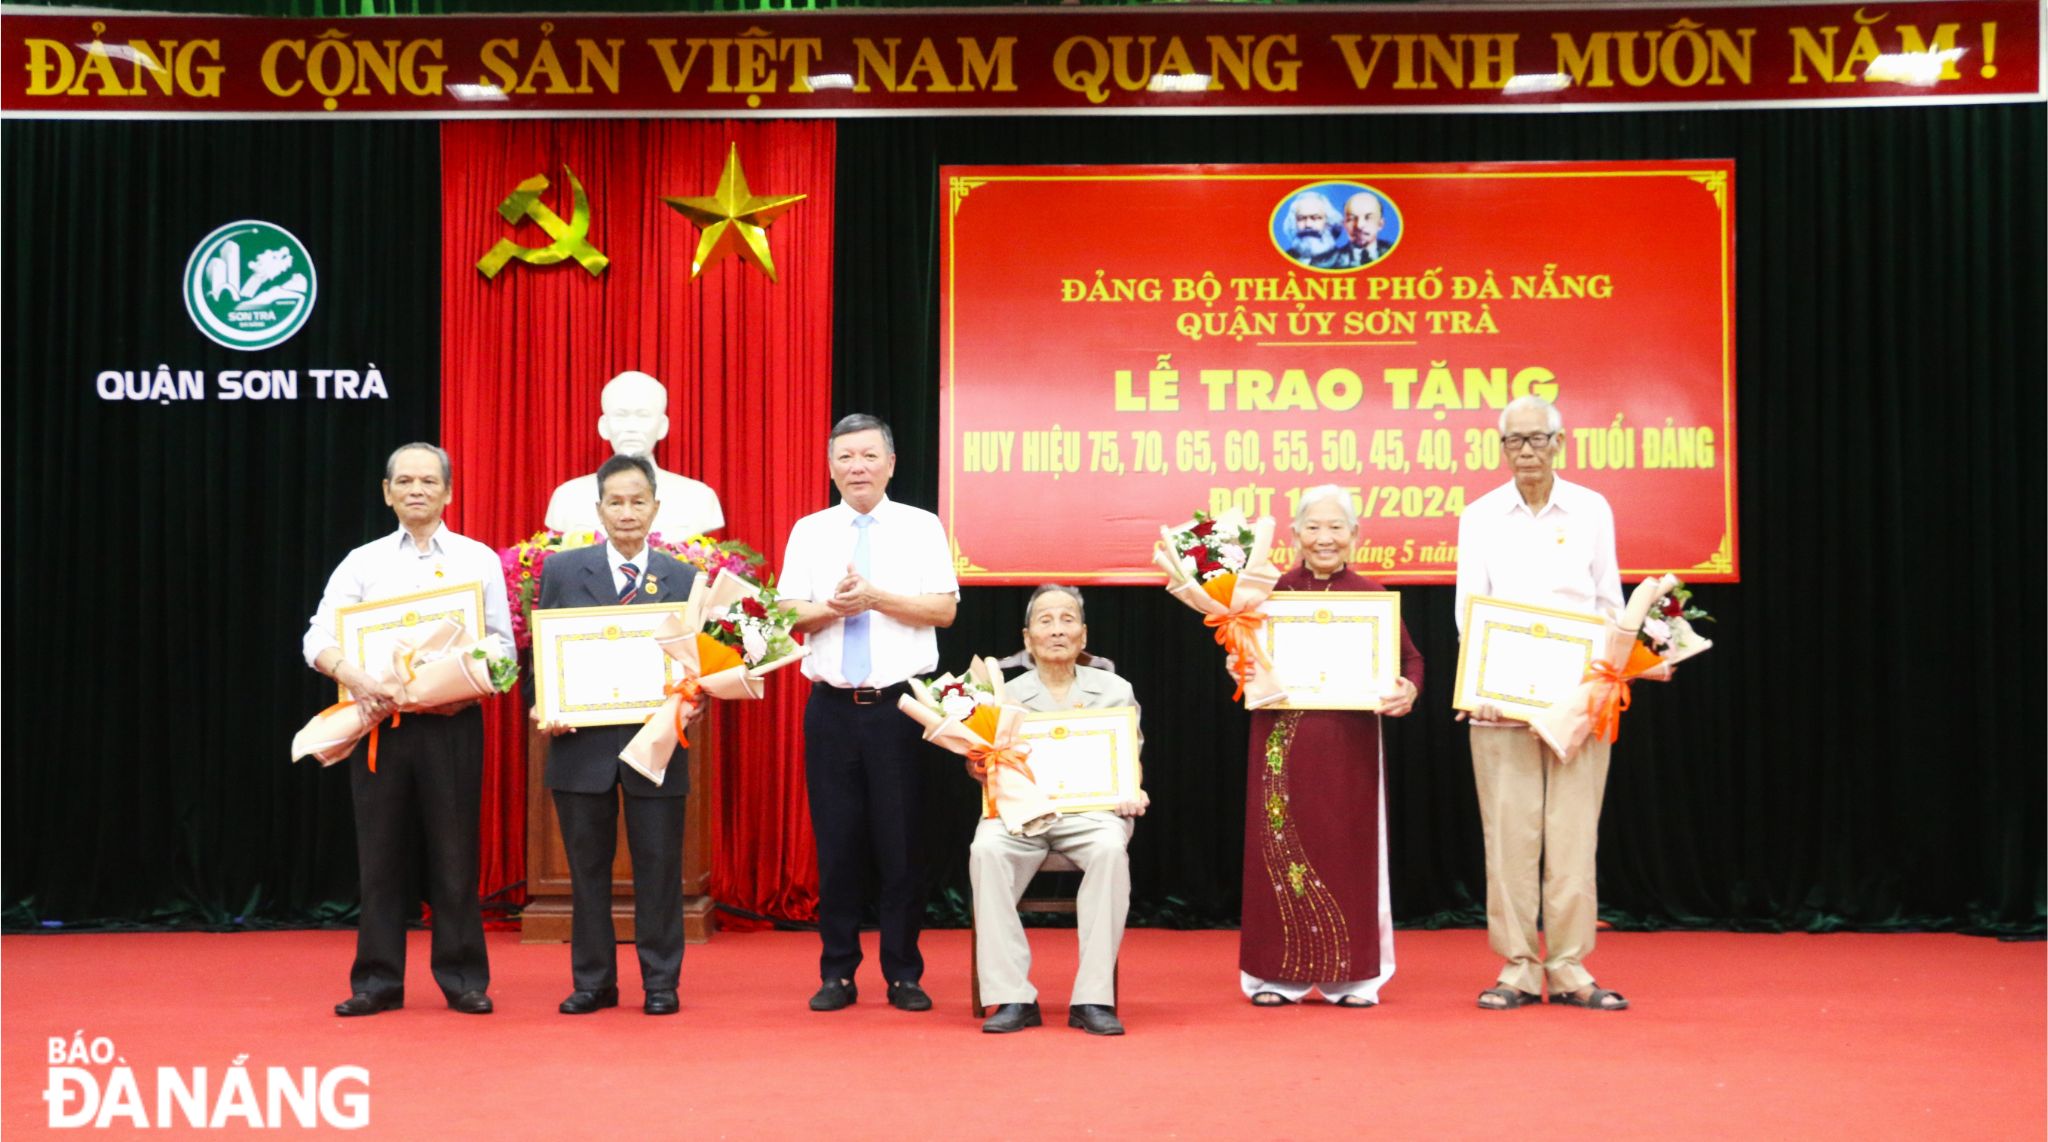 Trưởng ban Dân vận Thành ủy Lê Văn Trung (thứ 3, từ trái sang) trao Huy hiệu cho các đảng viên 65, 60 năm tuổi Đảng. Ảnh: T.P